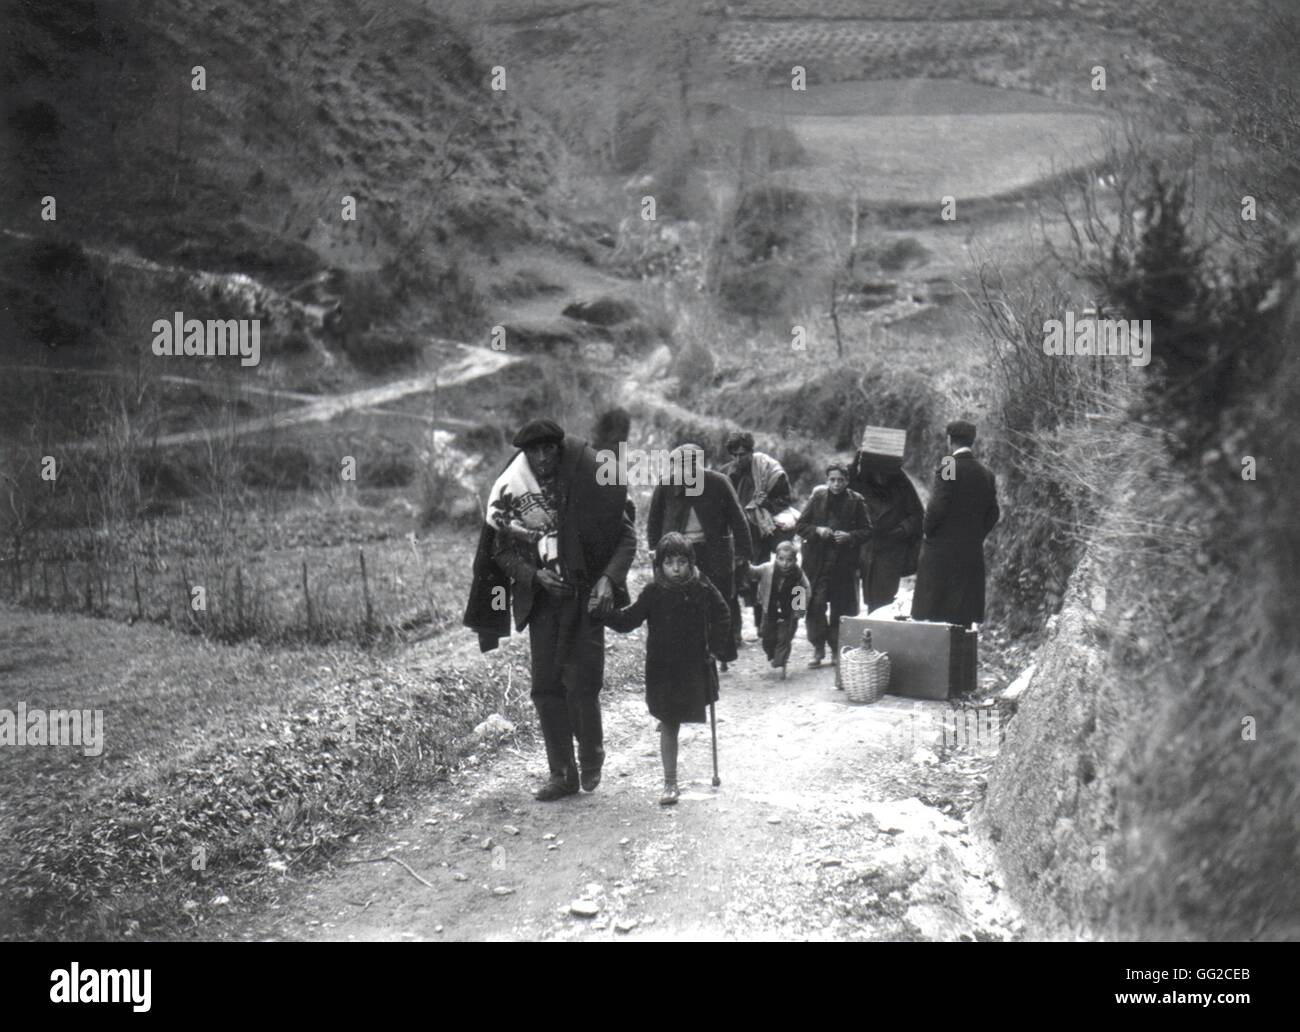 Nach der Einnahme von Barcelona, spanische Flüchtlingsströme in Frankreich (1939) 28. Juni 1939 Frankreich - spanischer Krieg Stockfoto